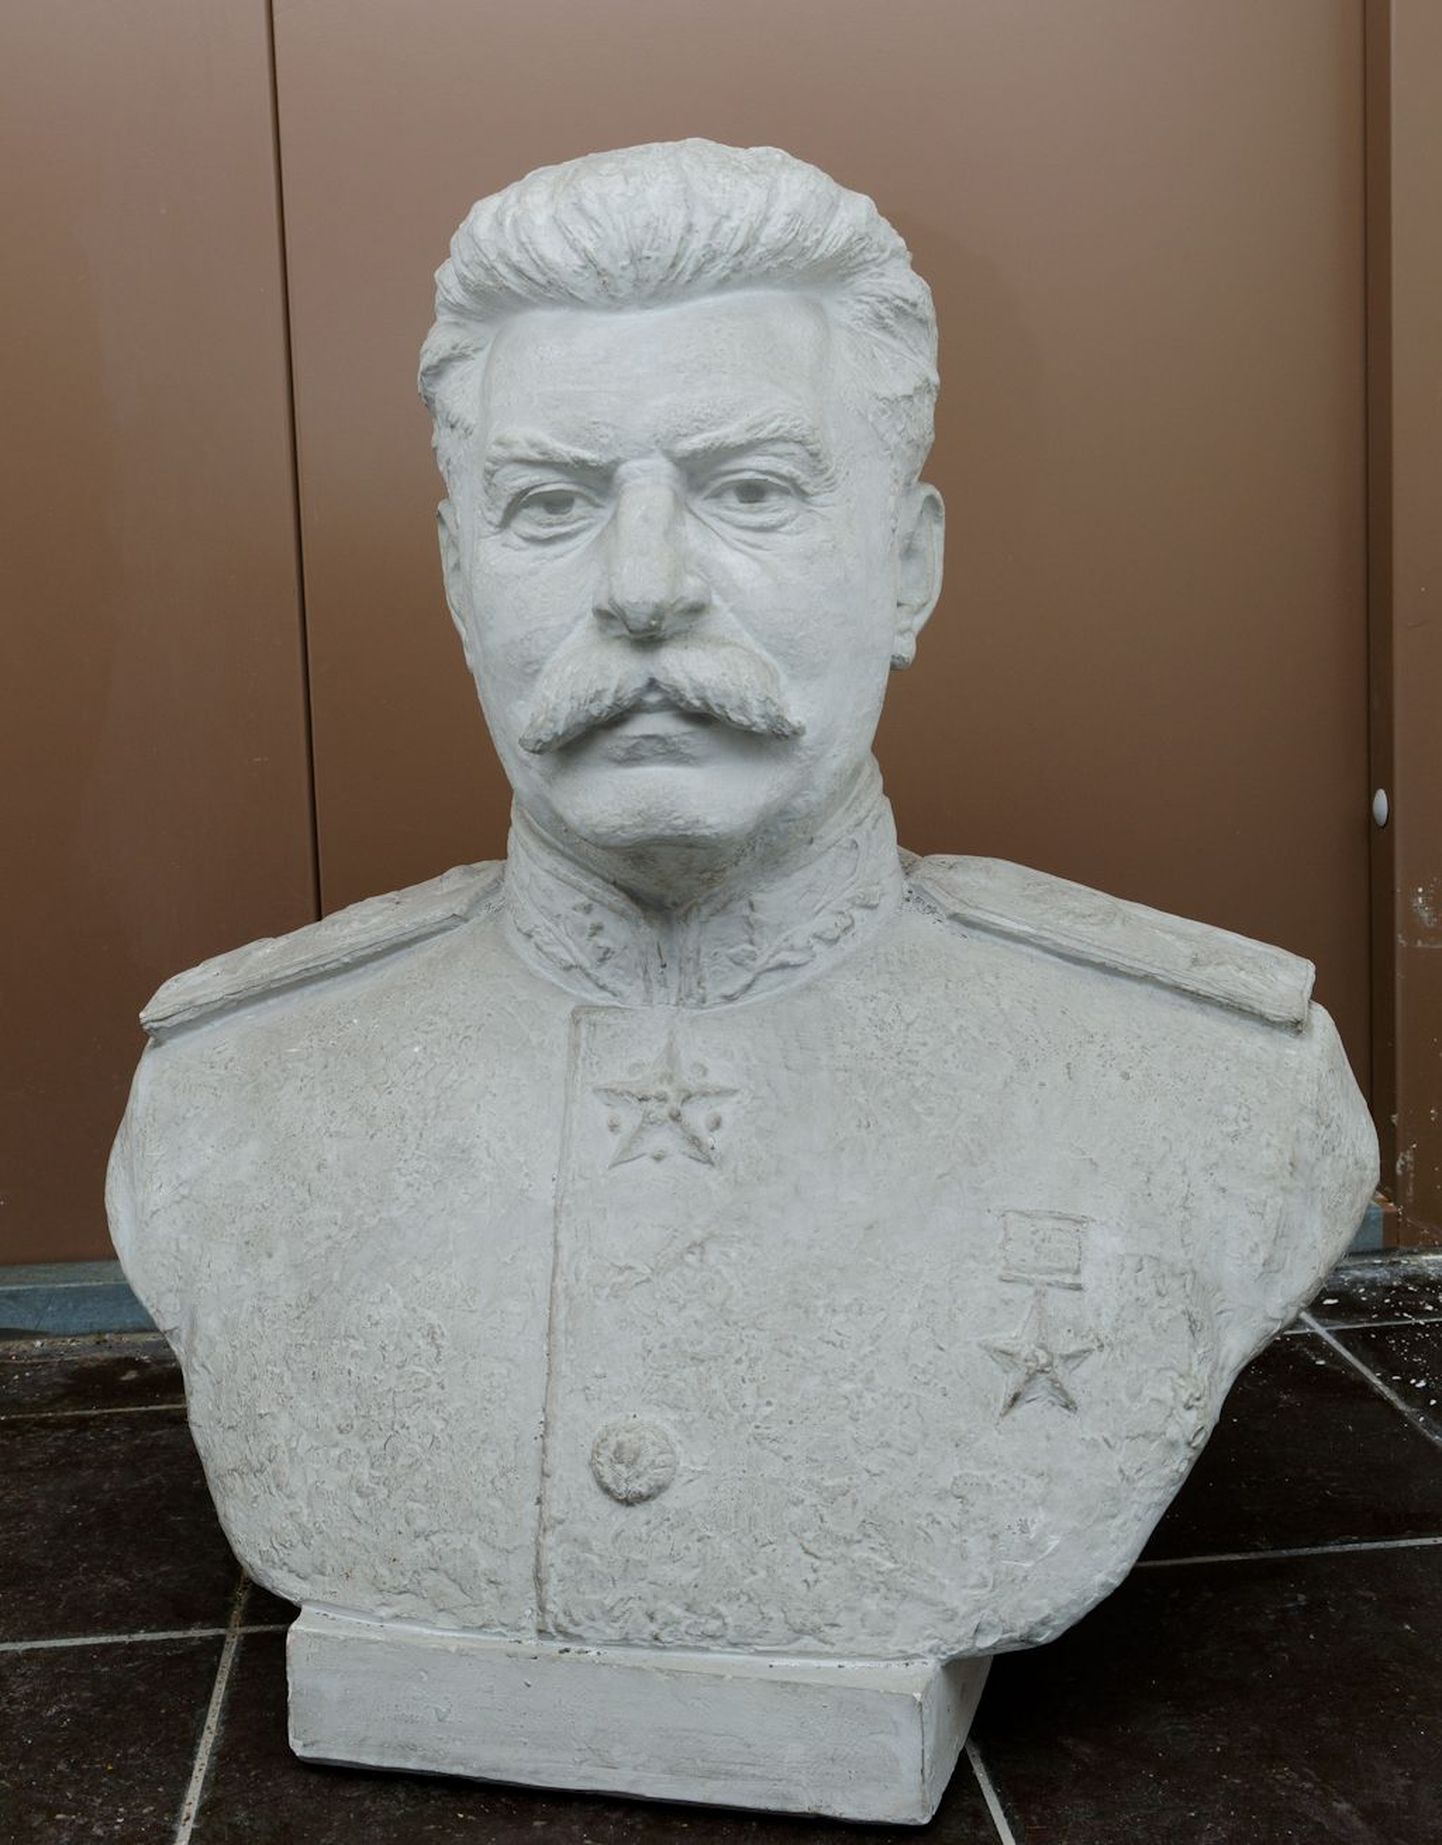 Stalini büst varastati muuseumist